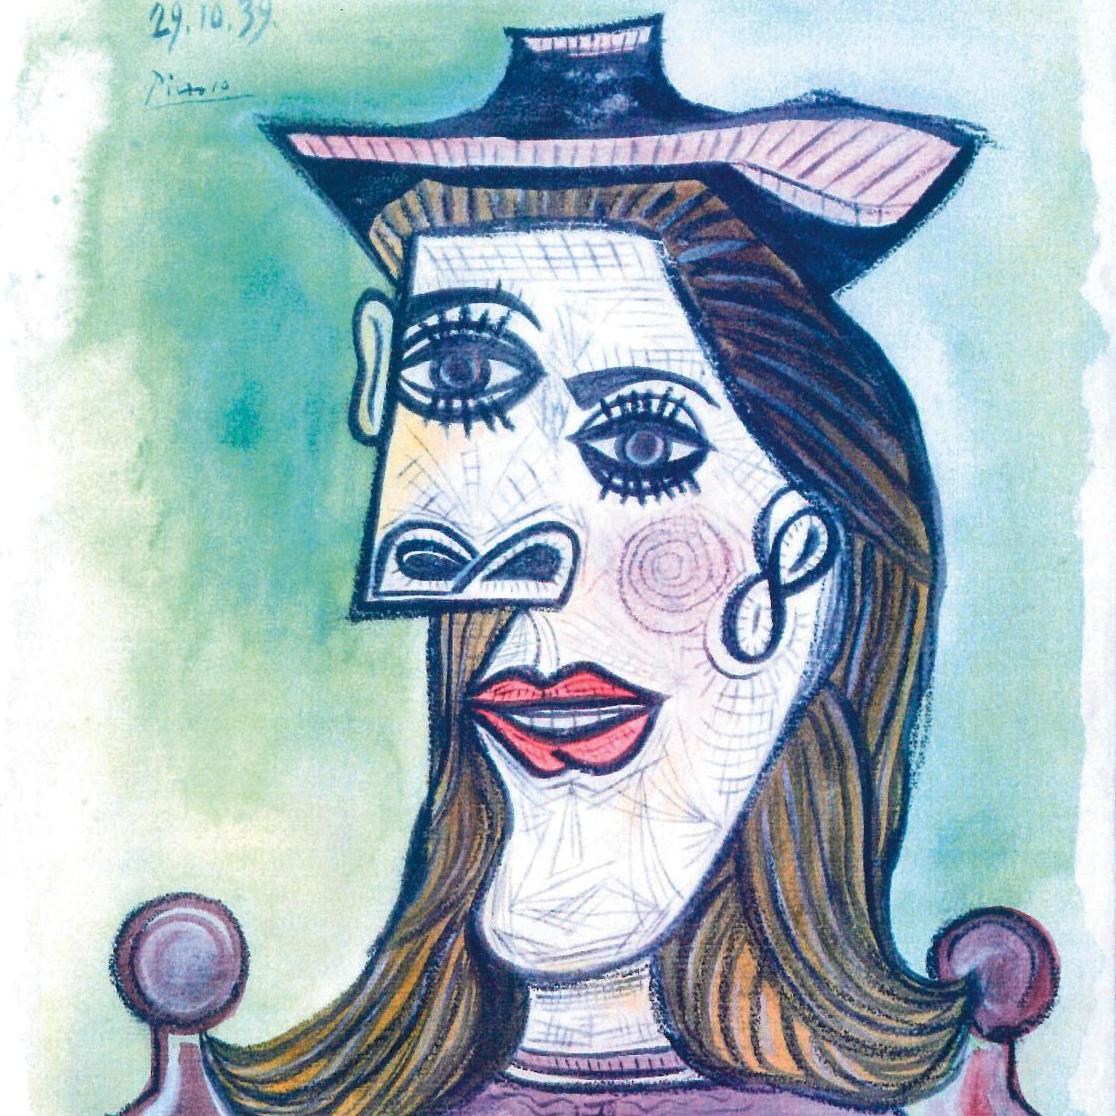 Picasso, un portrait contesté